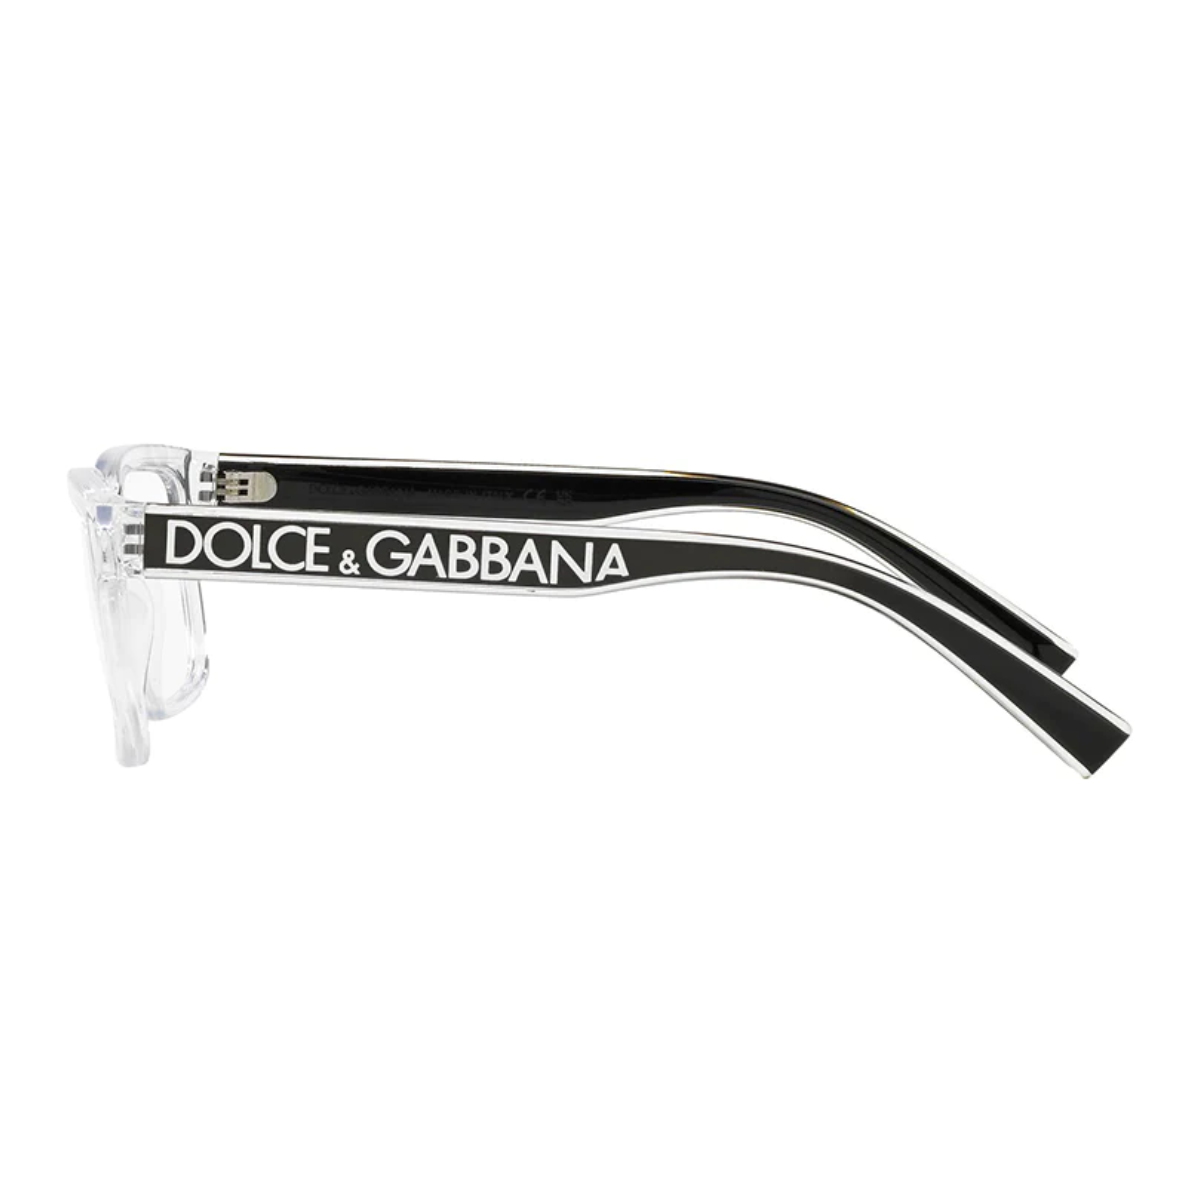 Dolce & Gabbana 5102 3133 Frame